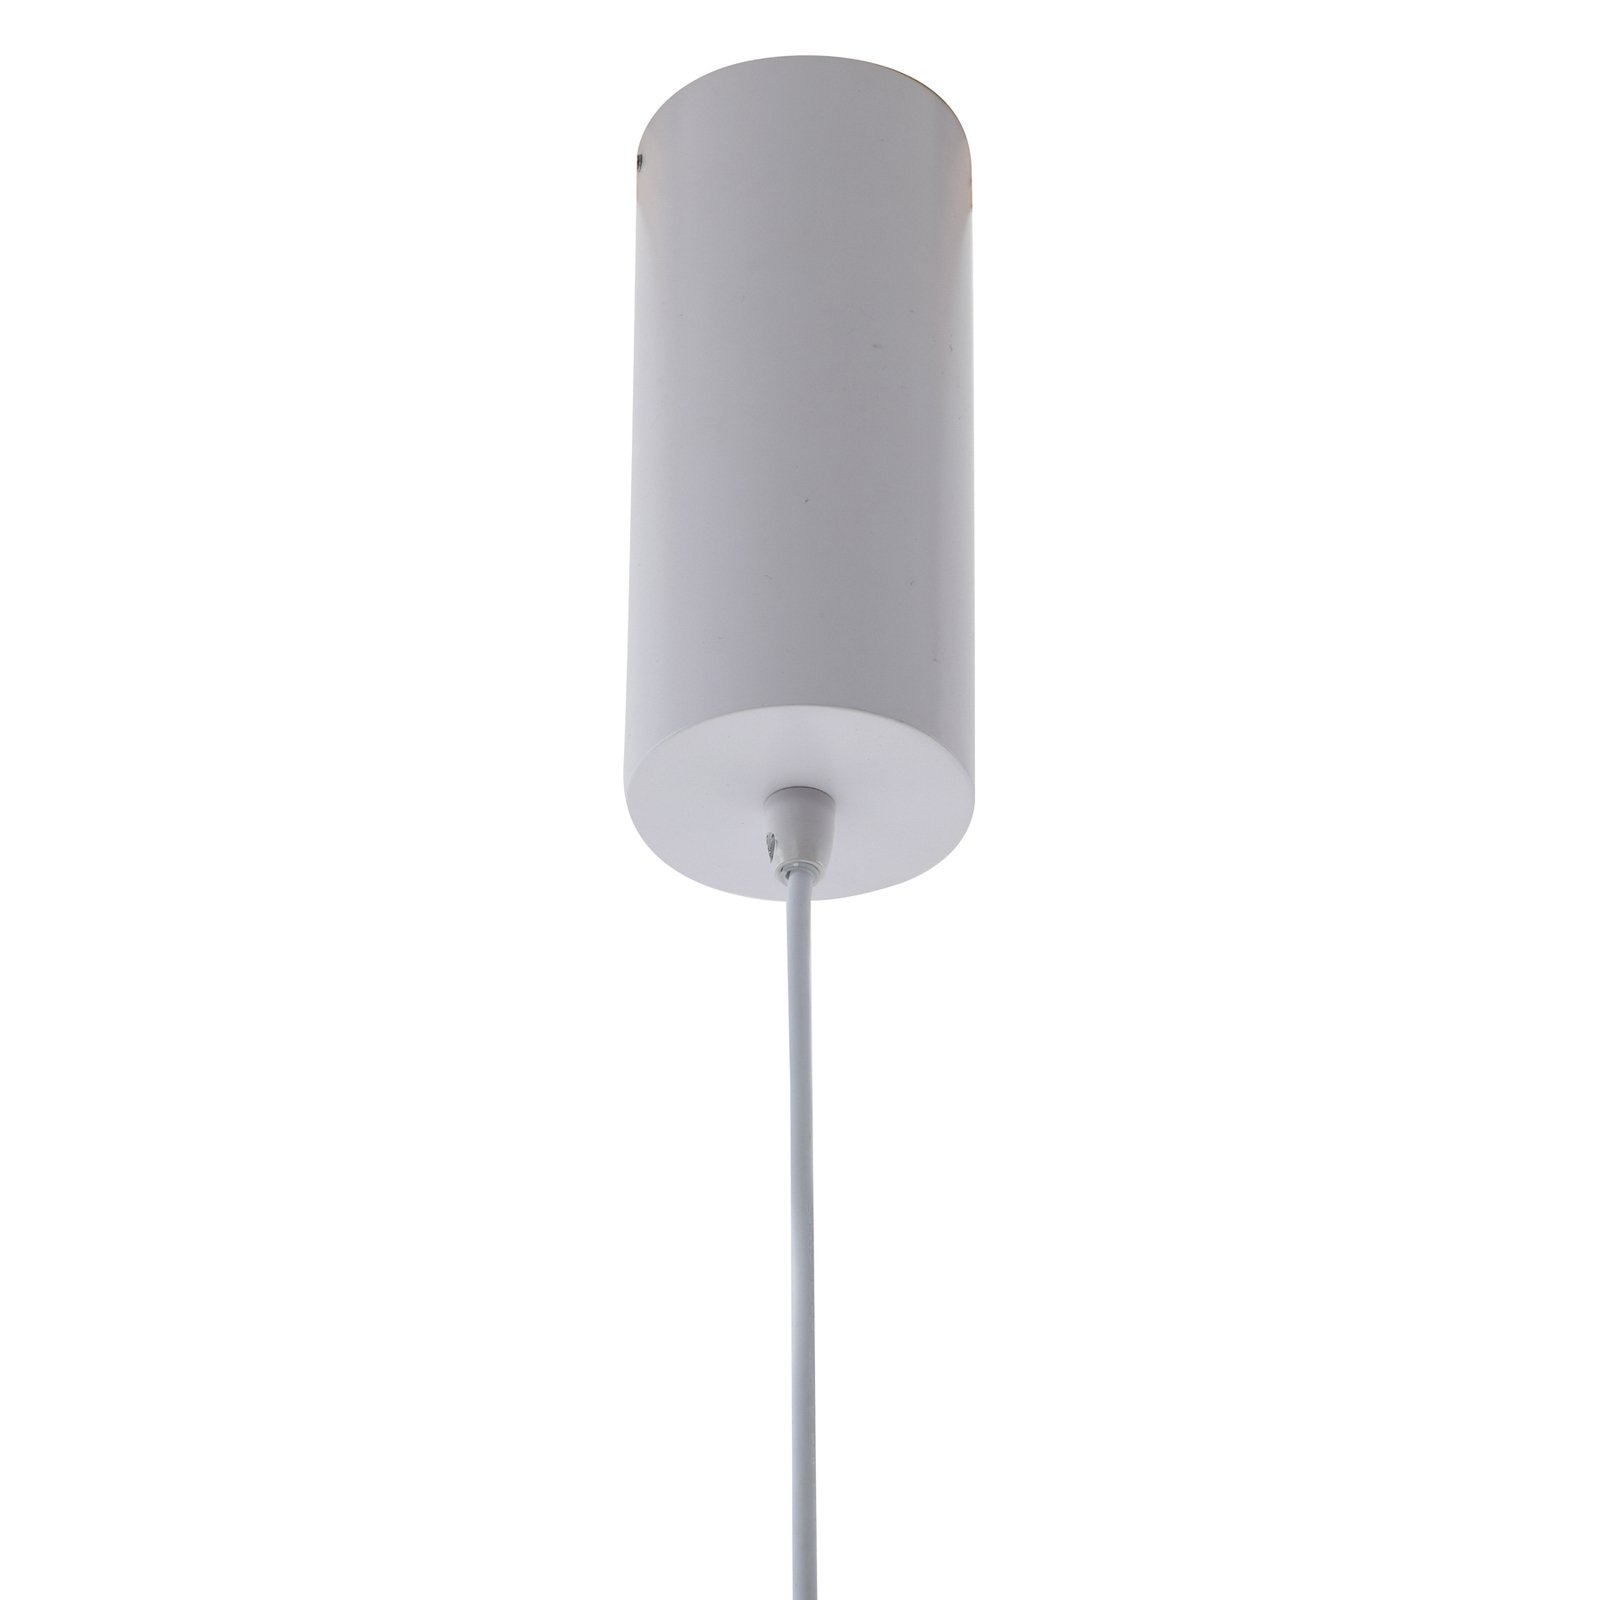 Lucande Orasa LED-Hängeleuchte, Glas, weiß/klar, Ø 43 cm